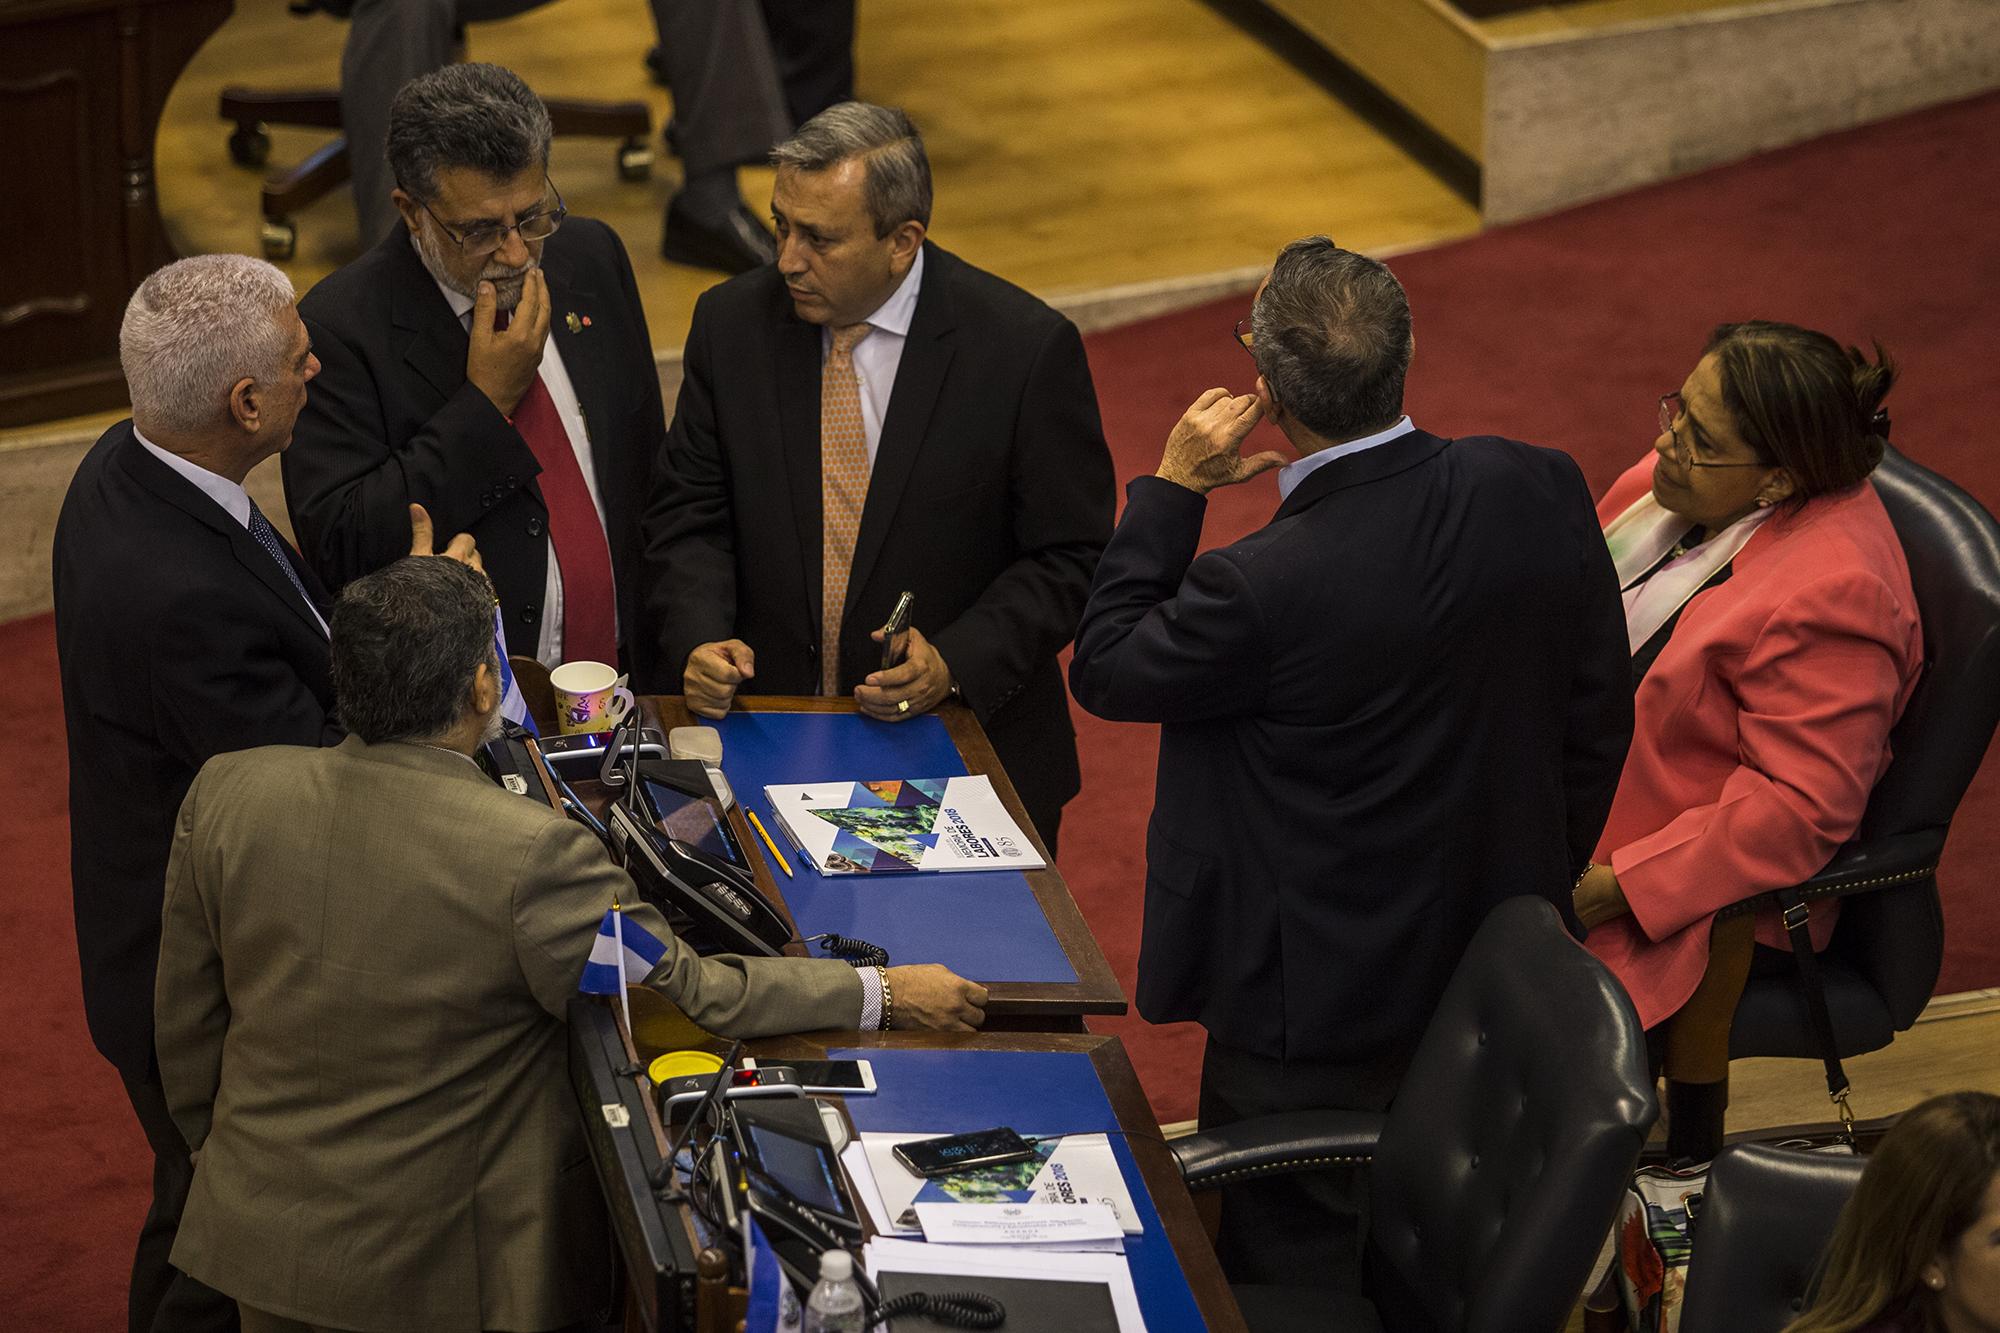 Los diputados Rodolfo Parker (PDC), Schafik Hándal (FMLN), Carlos Reyes (Arena), Roberto Angulo (PCN) y Nidia Díaz (FMLN) conversan durante la sesión plenaria del 23 de mayo de 2019. Los diputados de Arena y FMLN, en su mayoría, intentaron introducir una nueva ley de reconciliación. Foto: Víctor Peña.